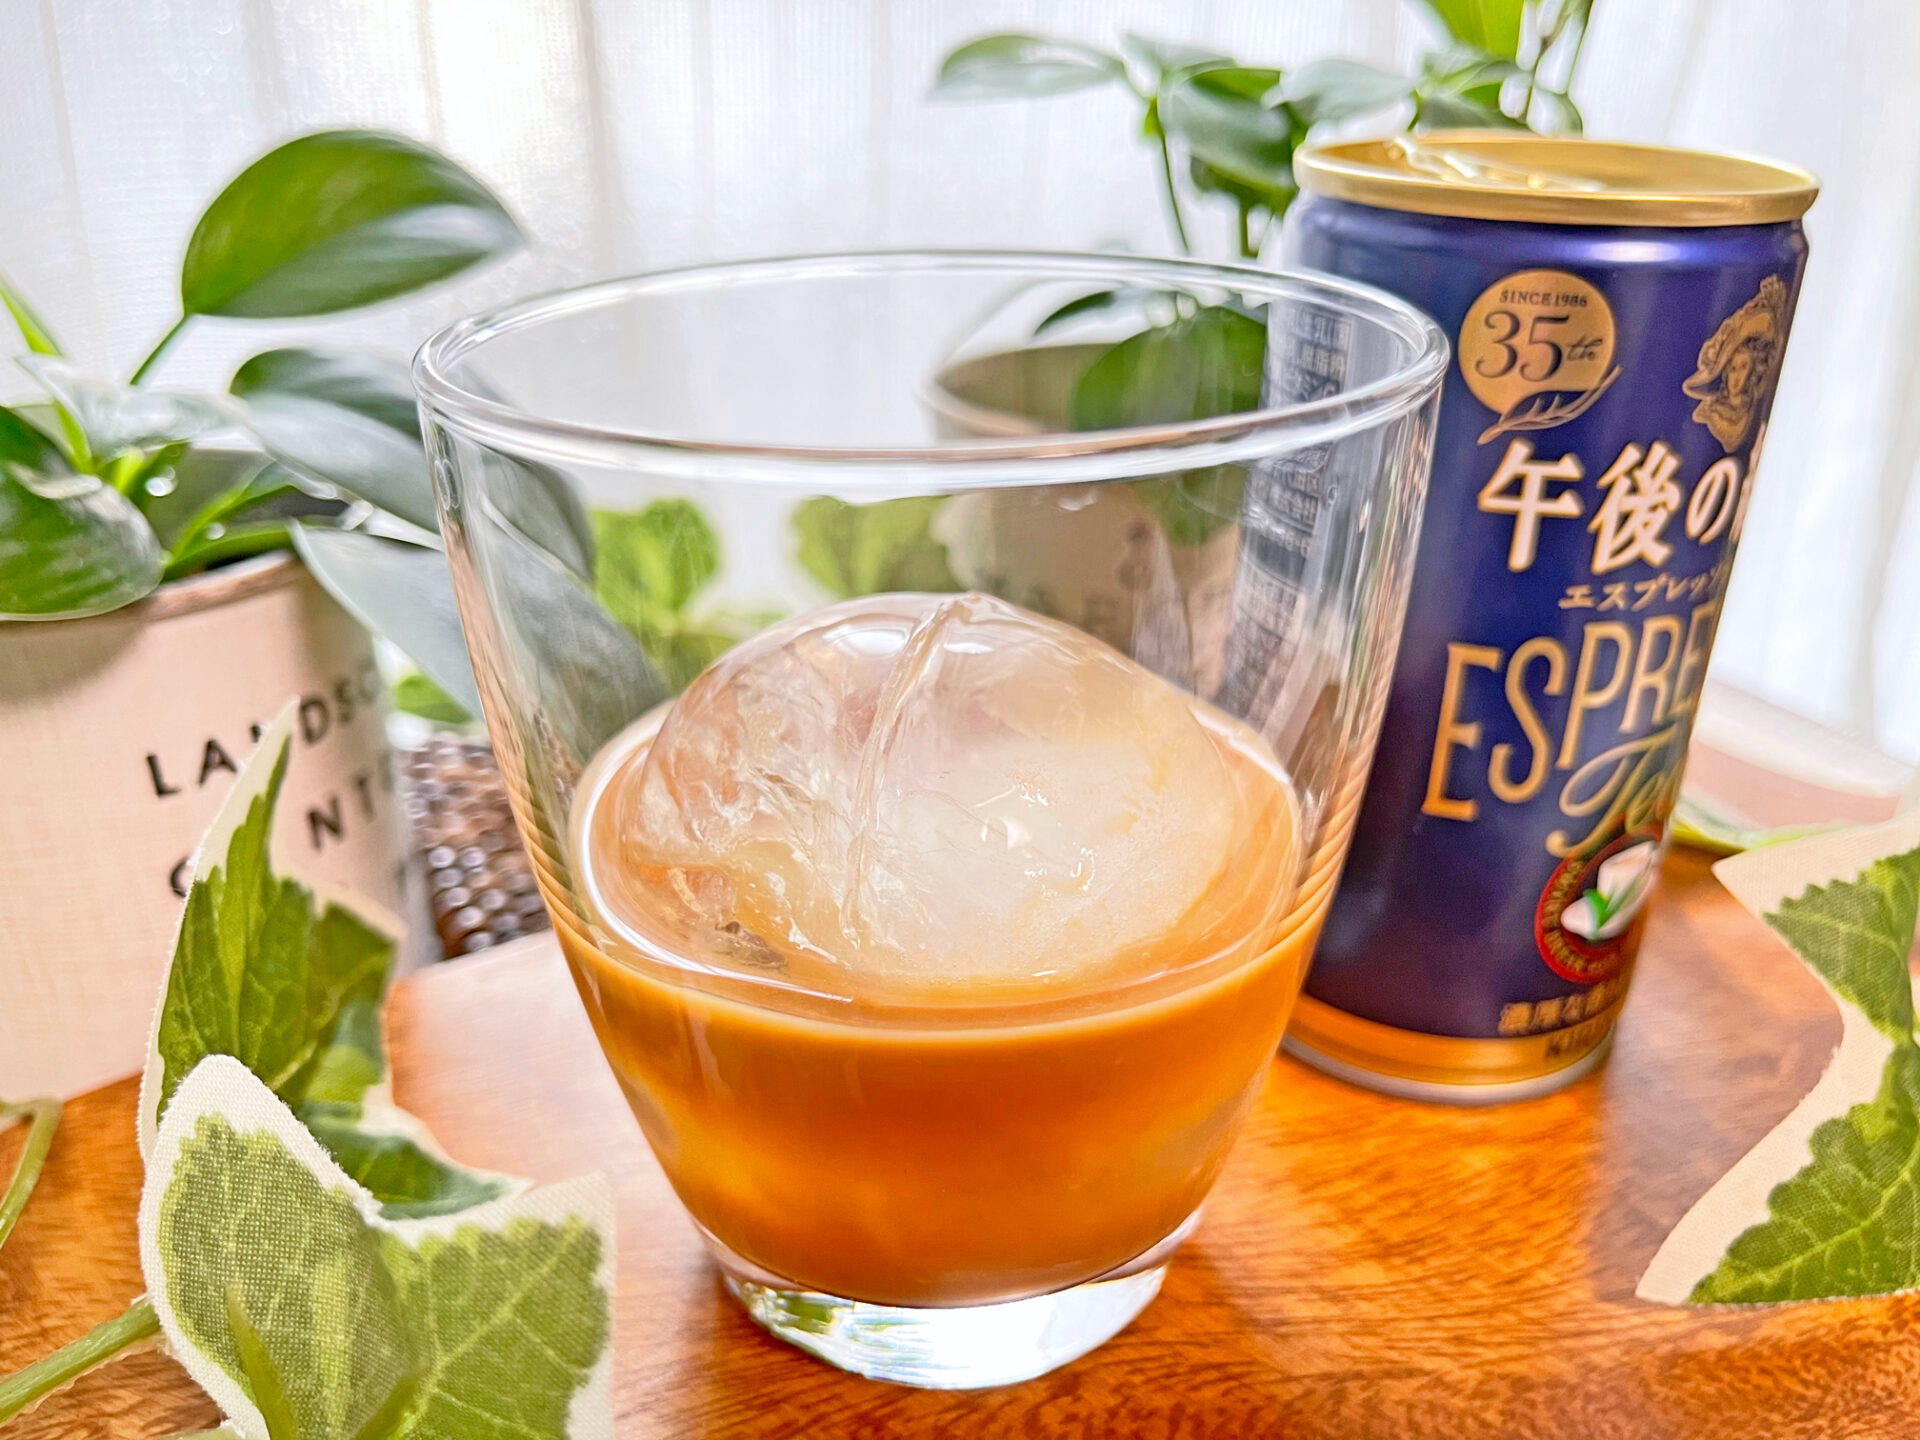 キリン『午後の紅茶 エスプレッソティー微糖 185g 缶』